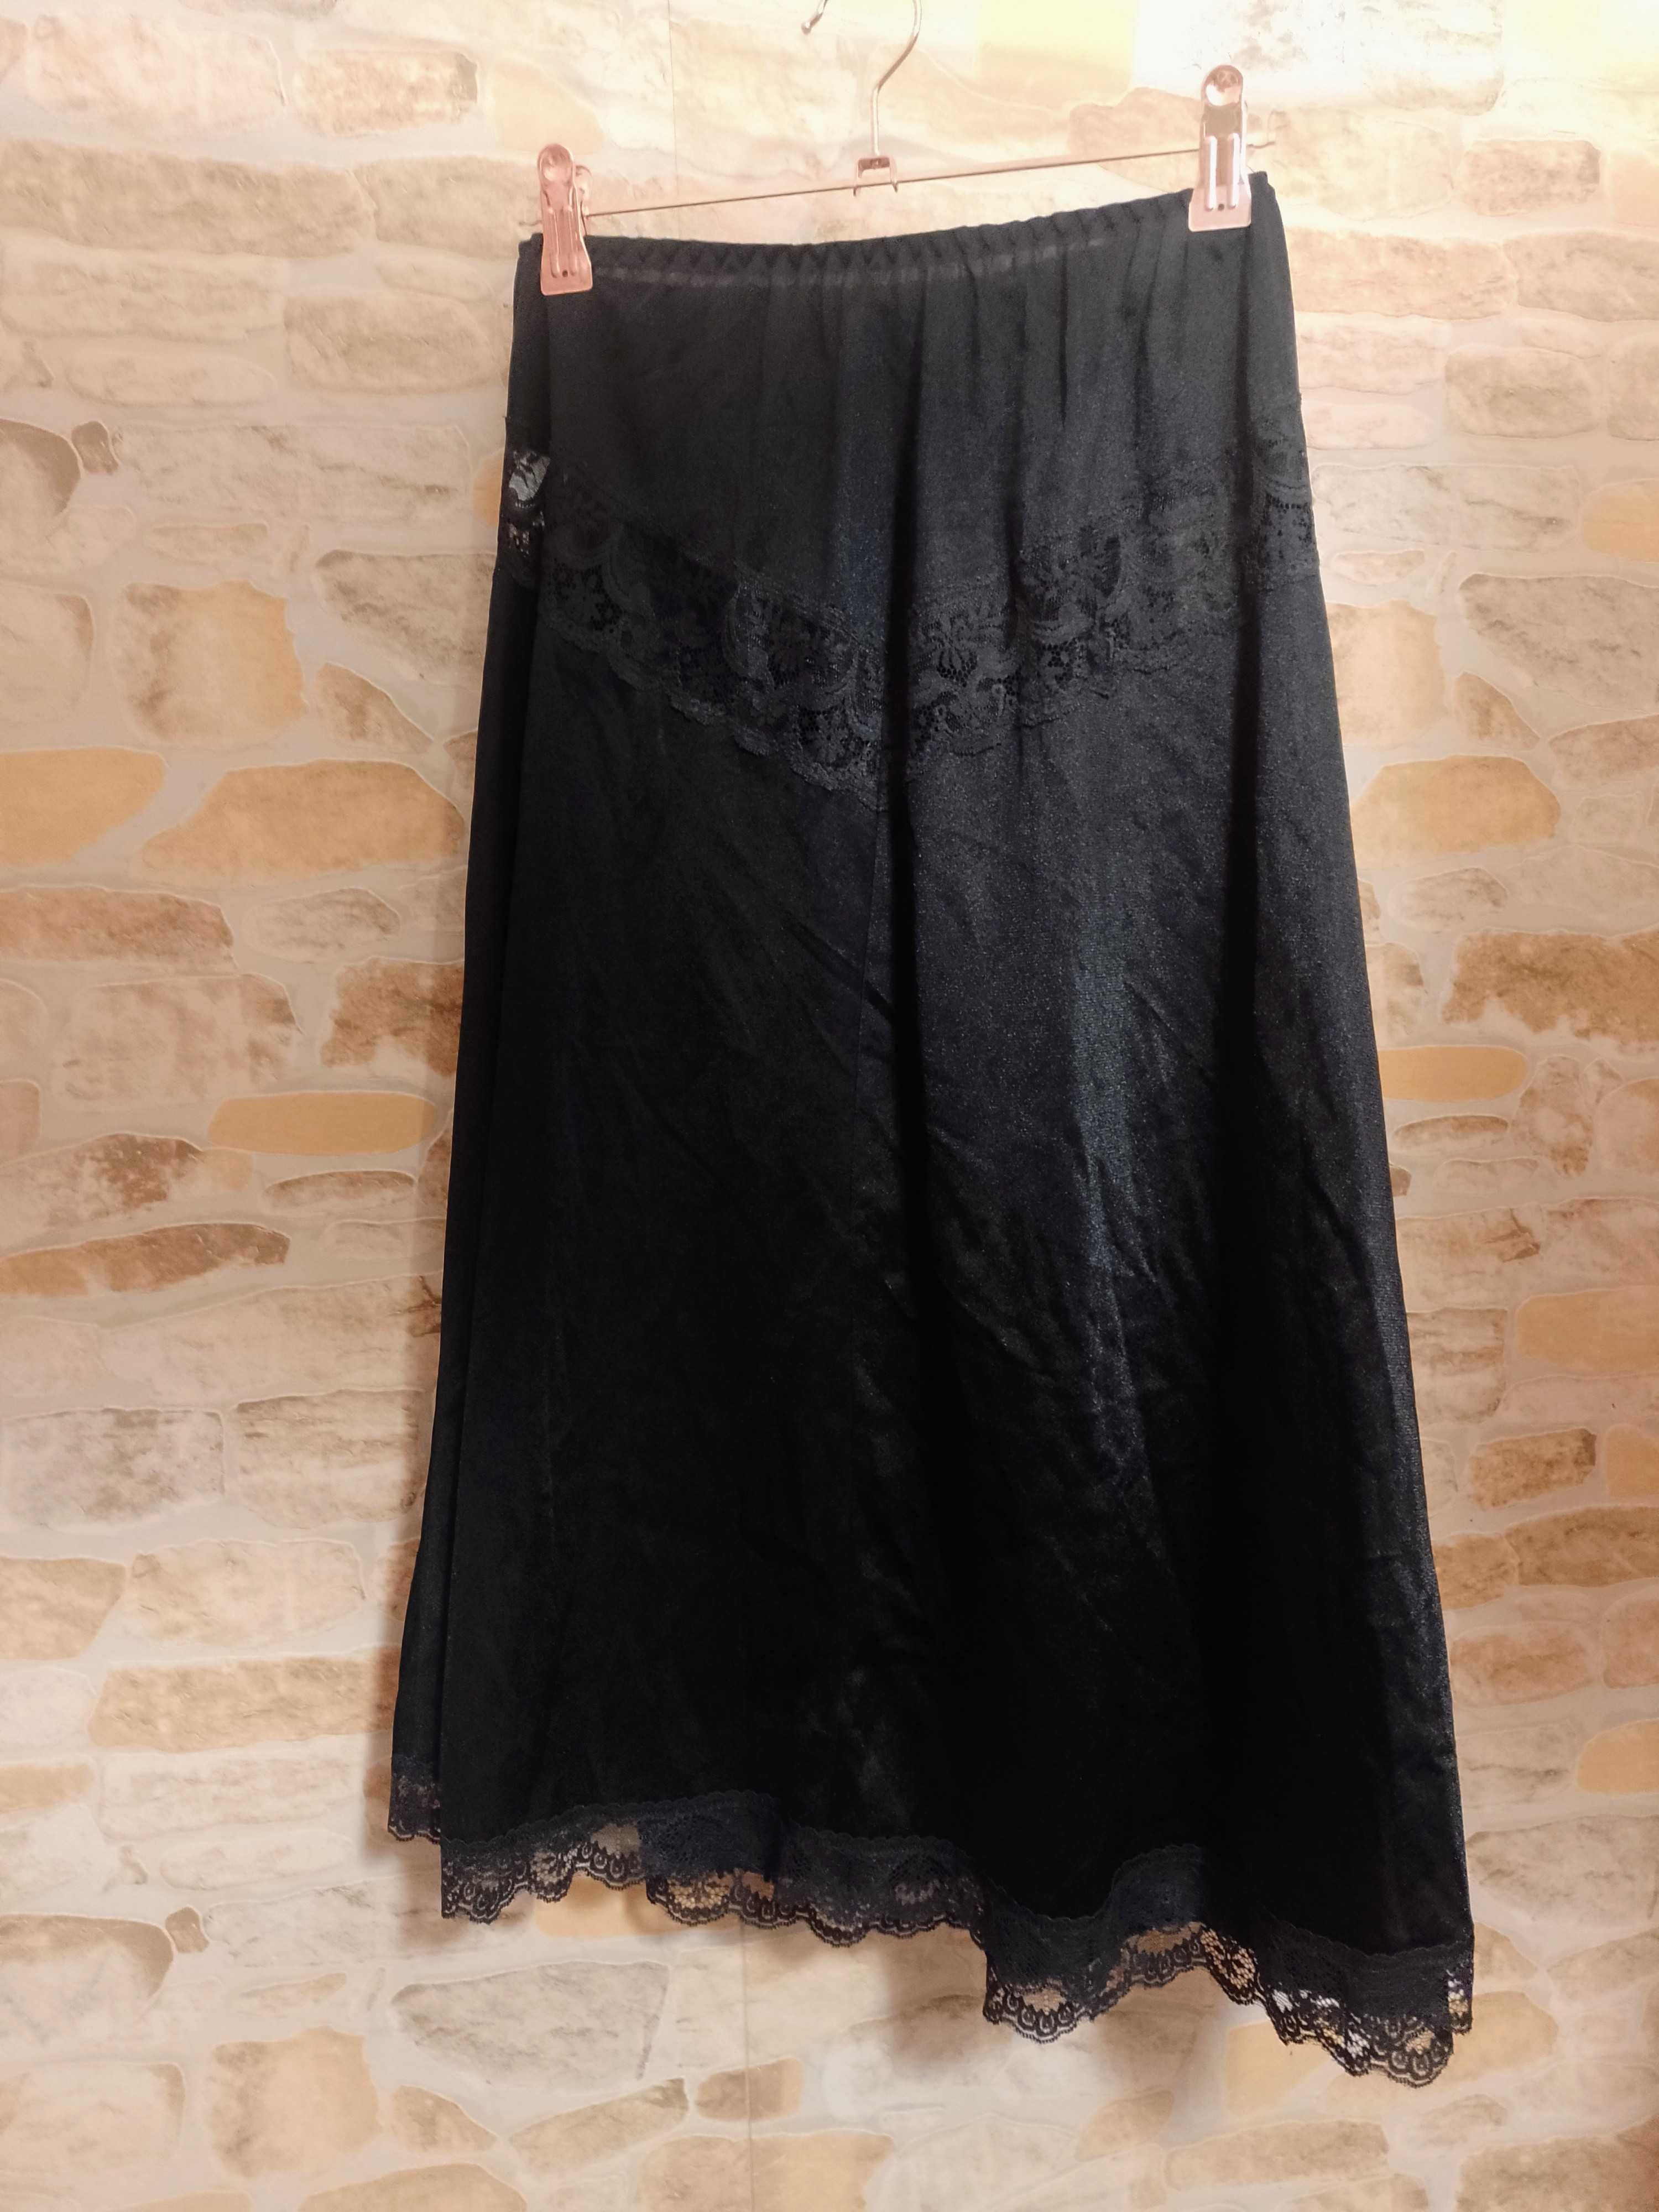 (XS/S) Czarna półhalka pod spódnicę z Londynu, Halka pod sukienkę